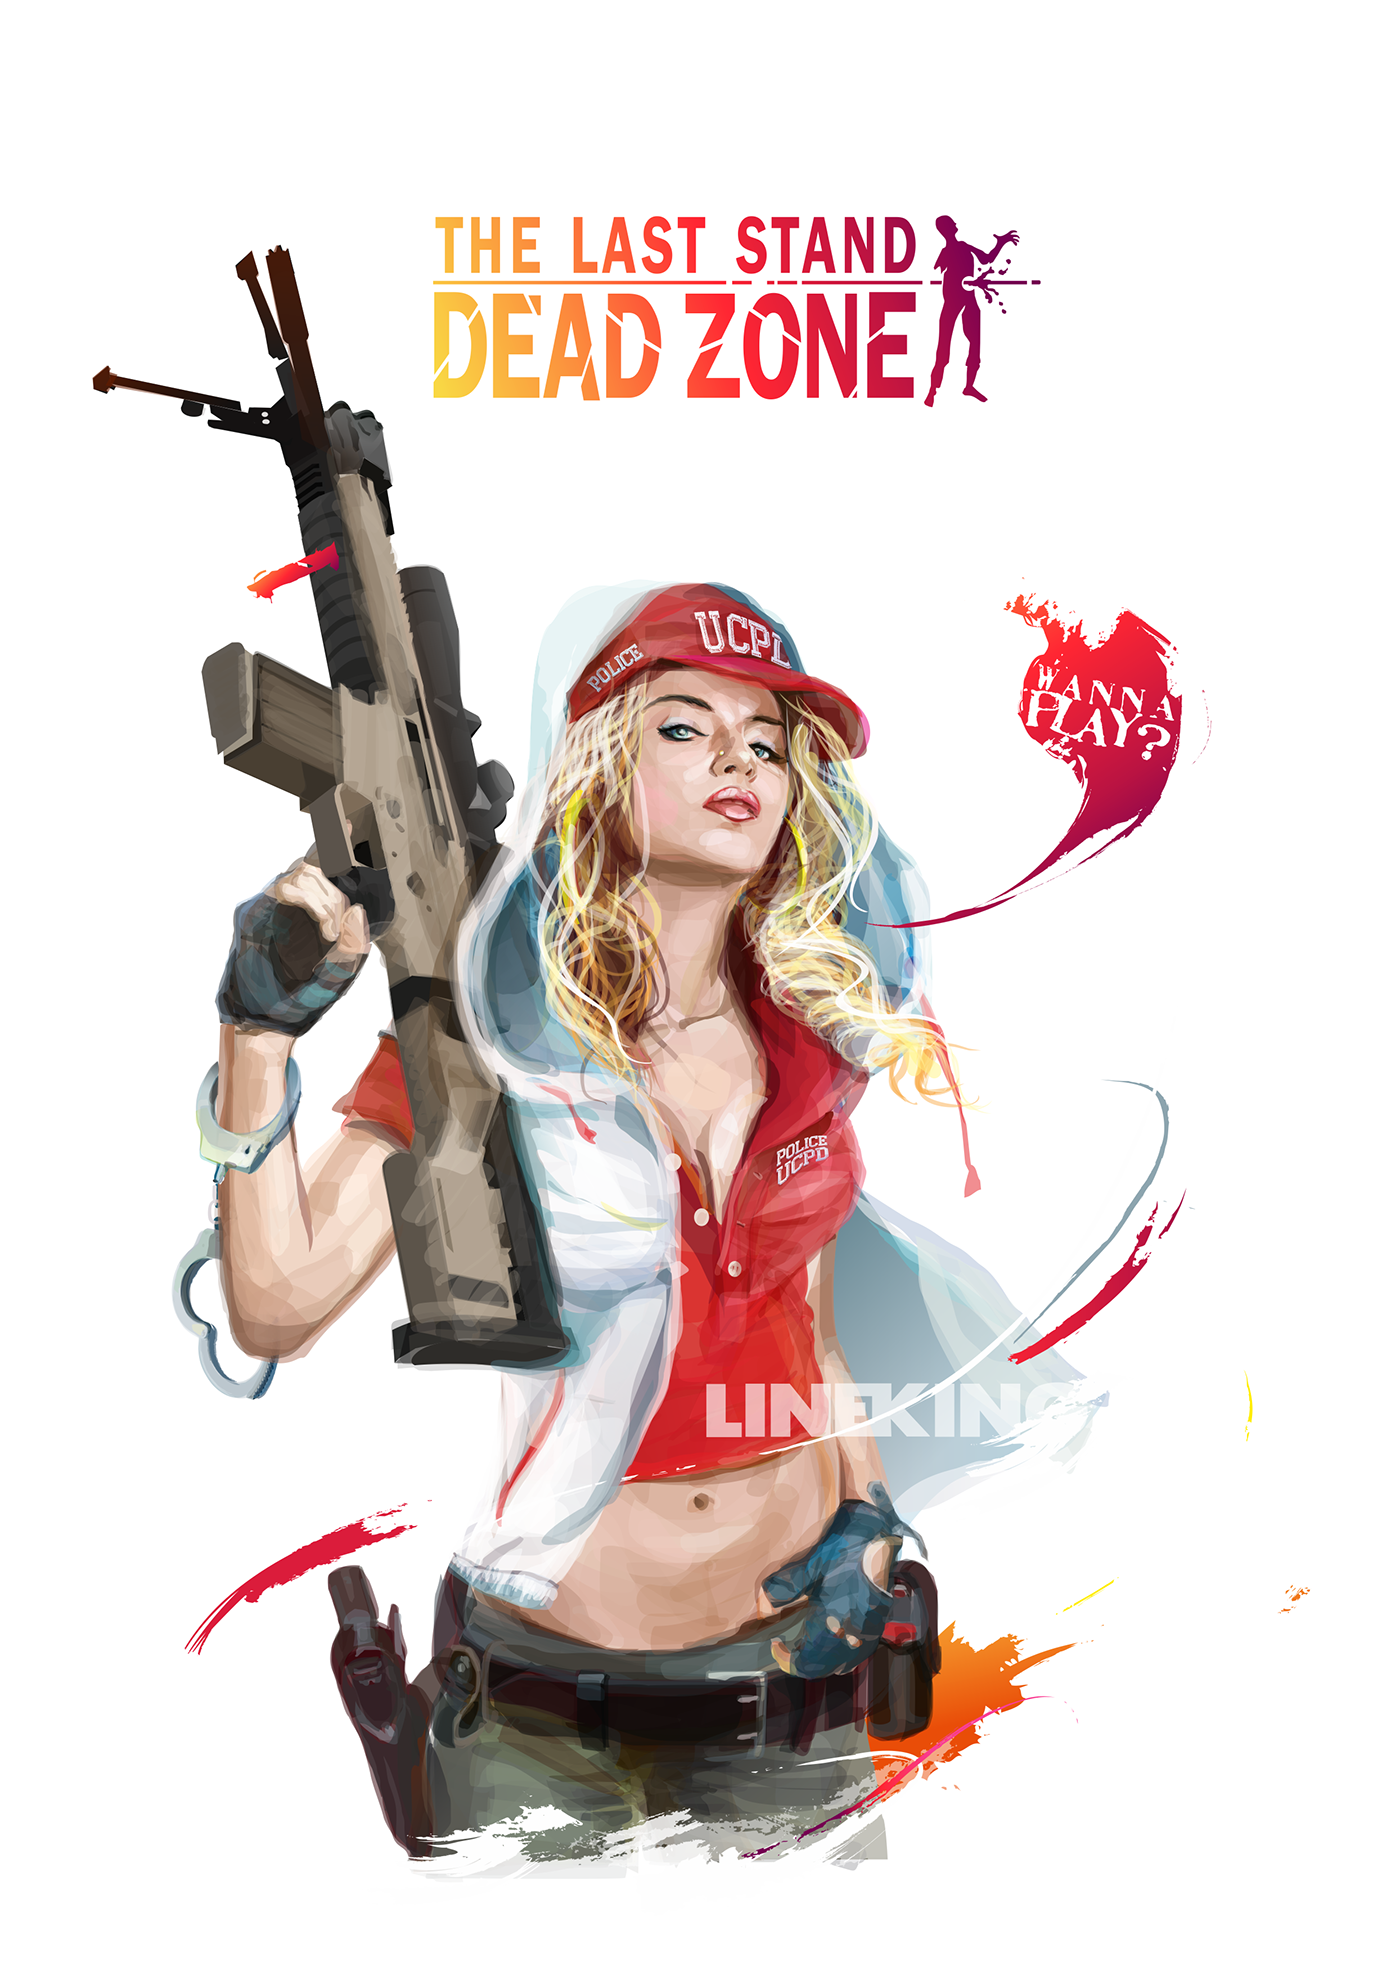 game vector art Lineking last stand dead zone zombie recon soldier crossbow coreldraw vector